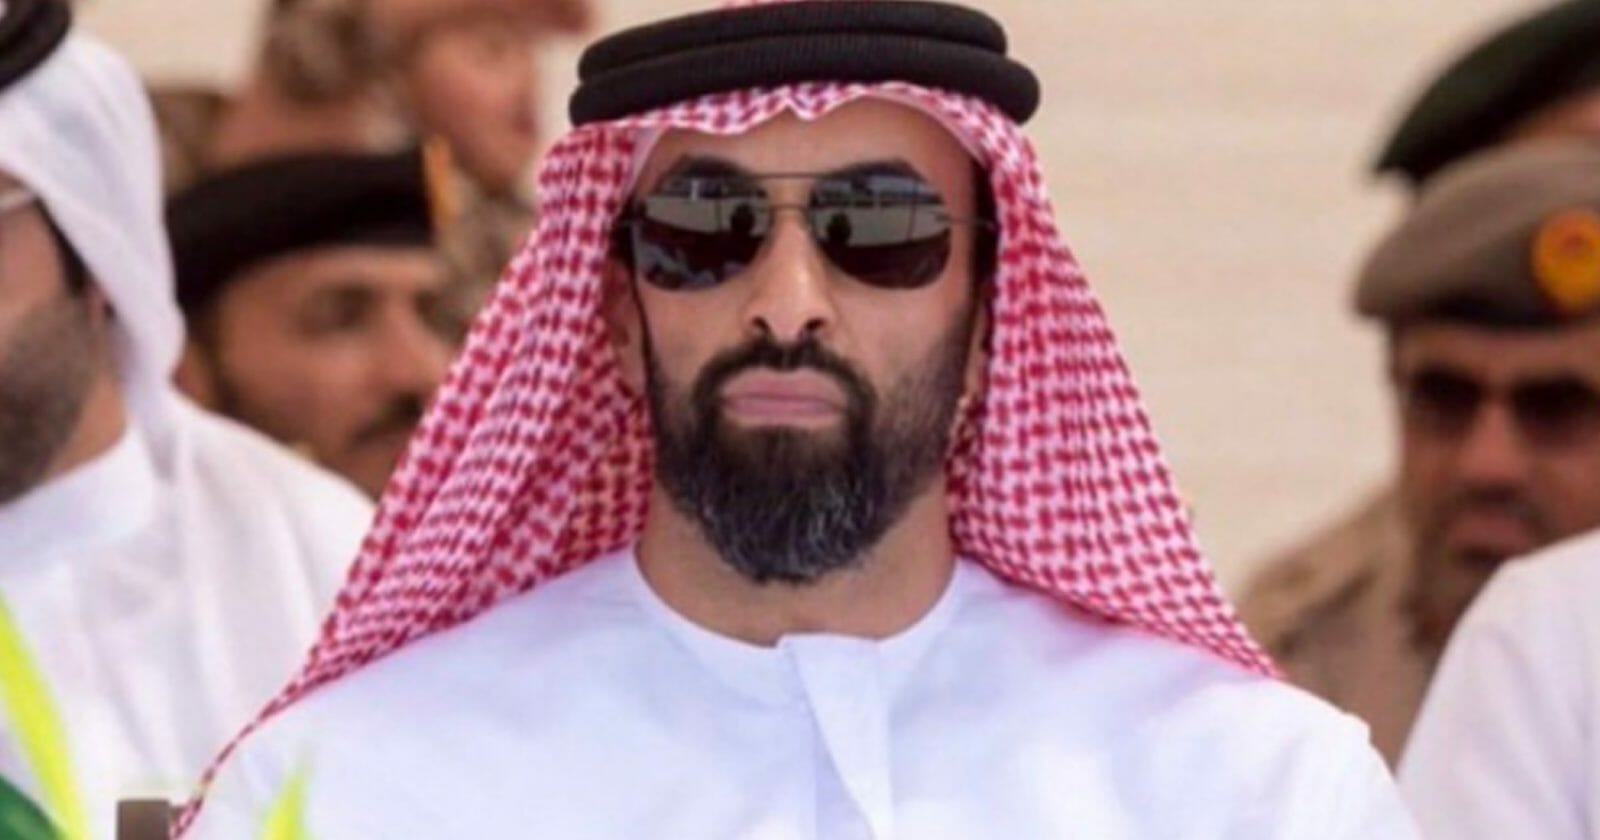 طحنون بن زايد "رجل التريليون ونصف دولار" الذي وضع يده على خزائن الإمارات